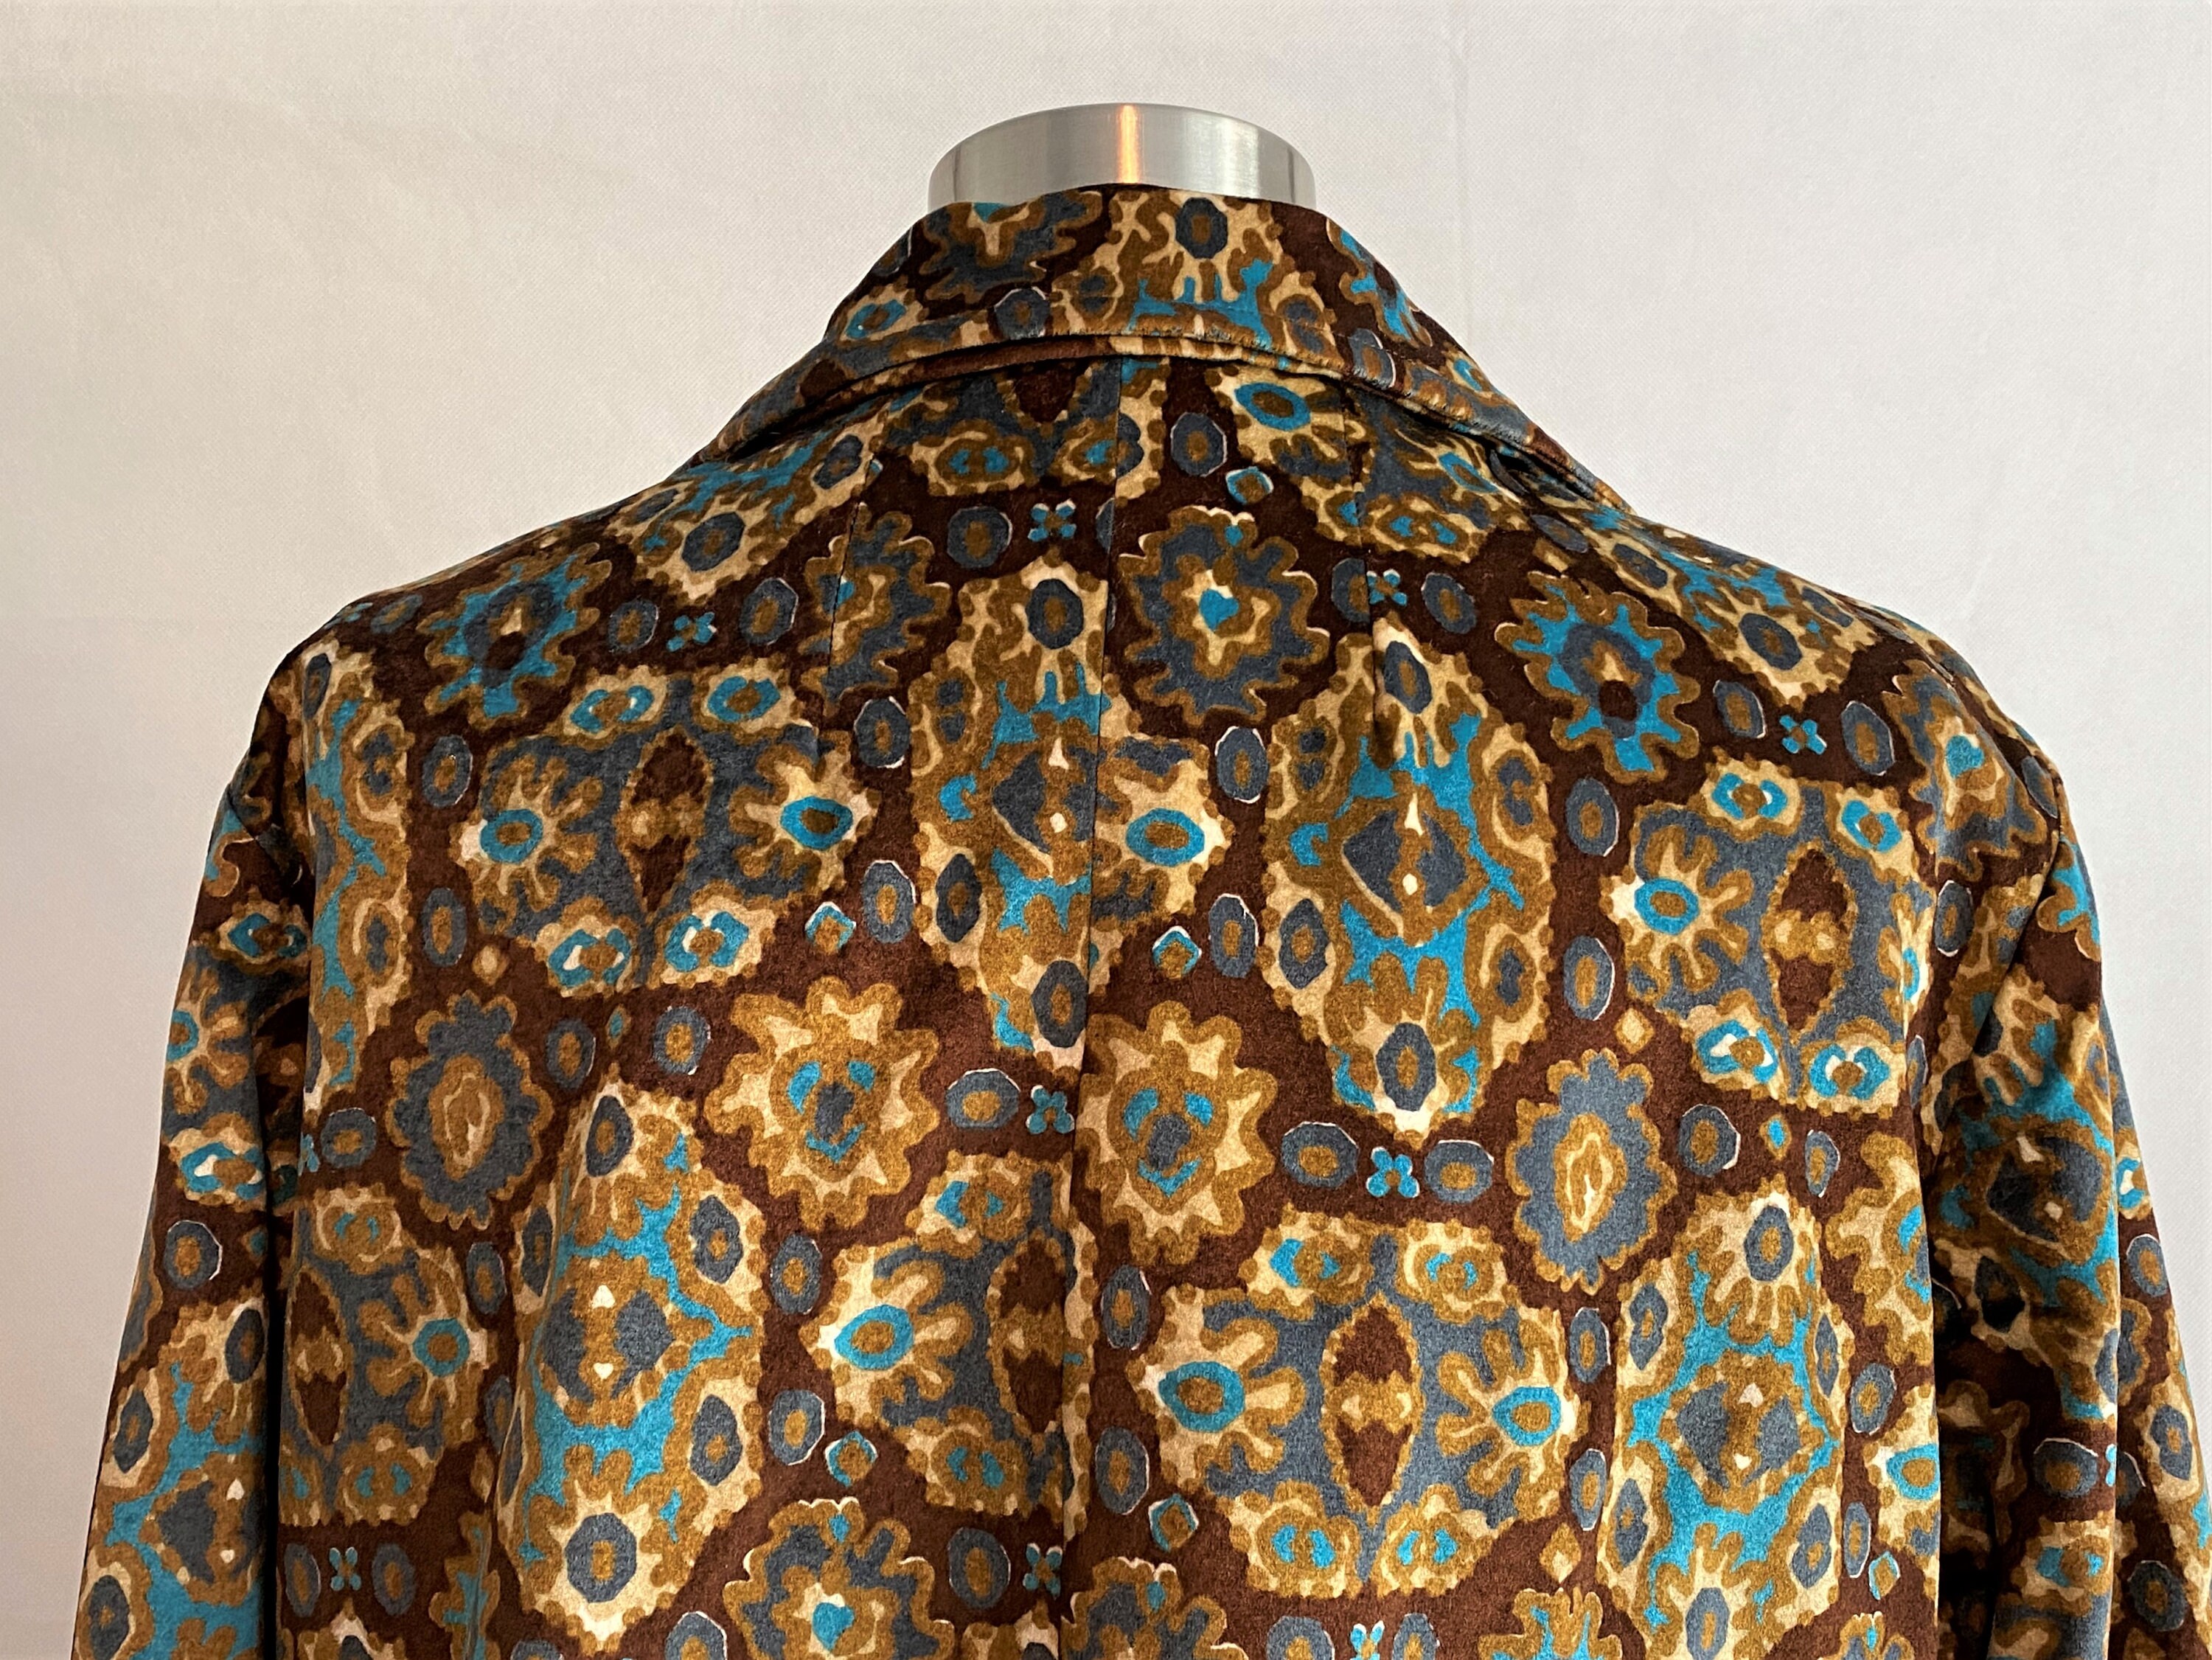 Vintage Brown and Teal Carpet Coat Vintage Jackets | Etsy